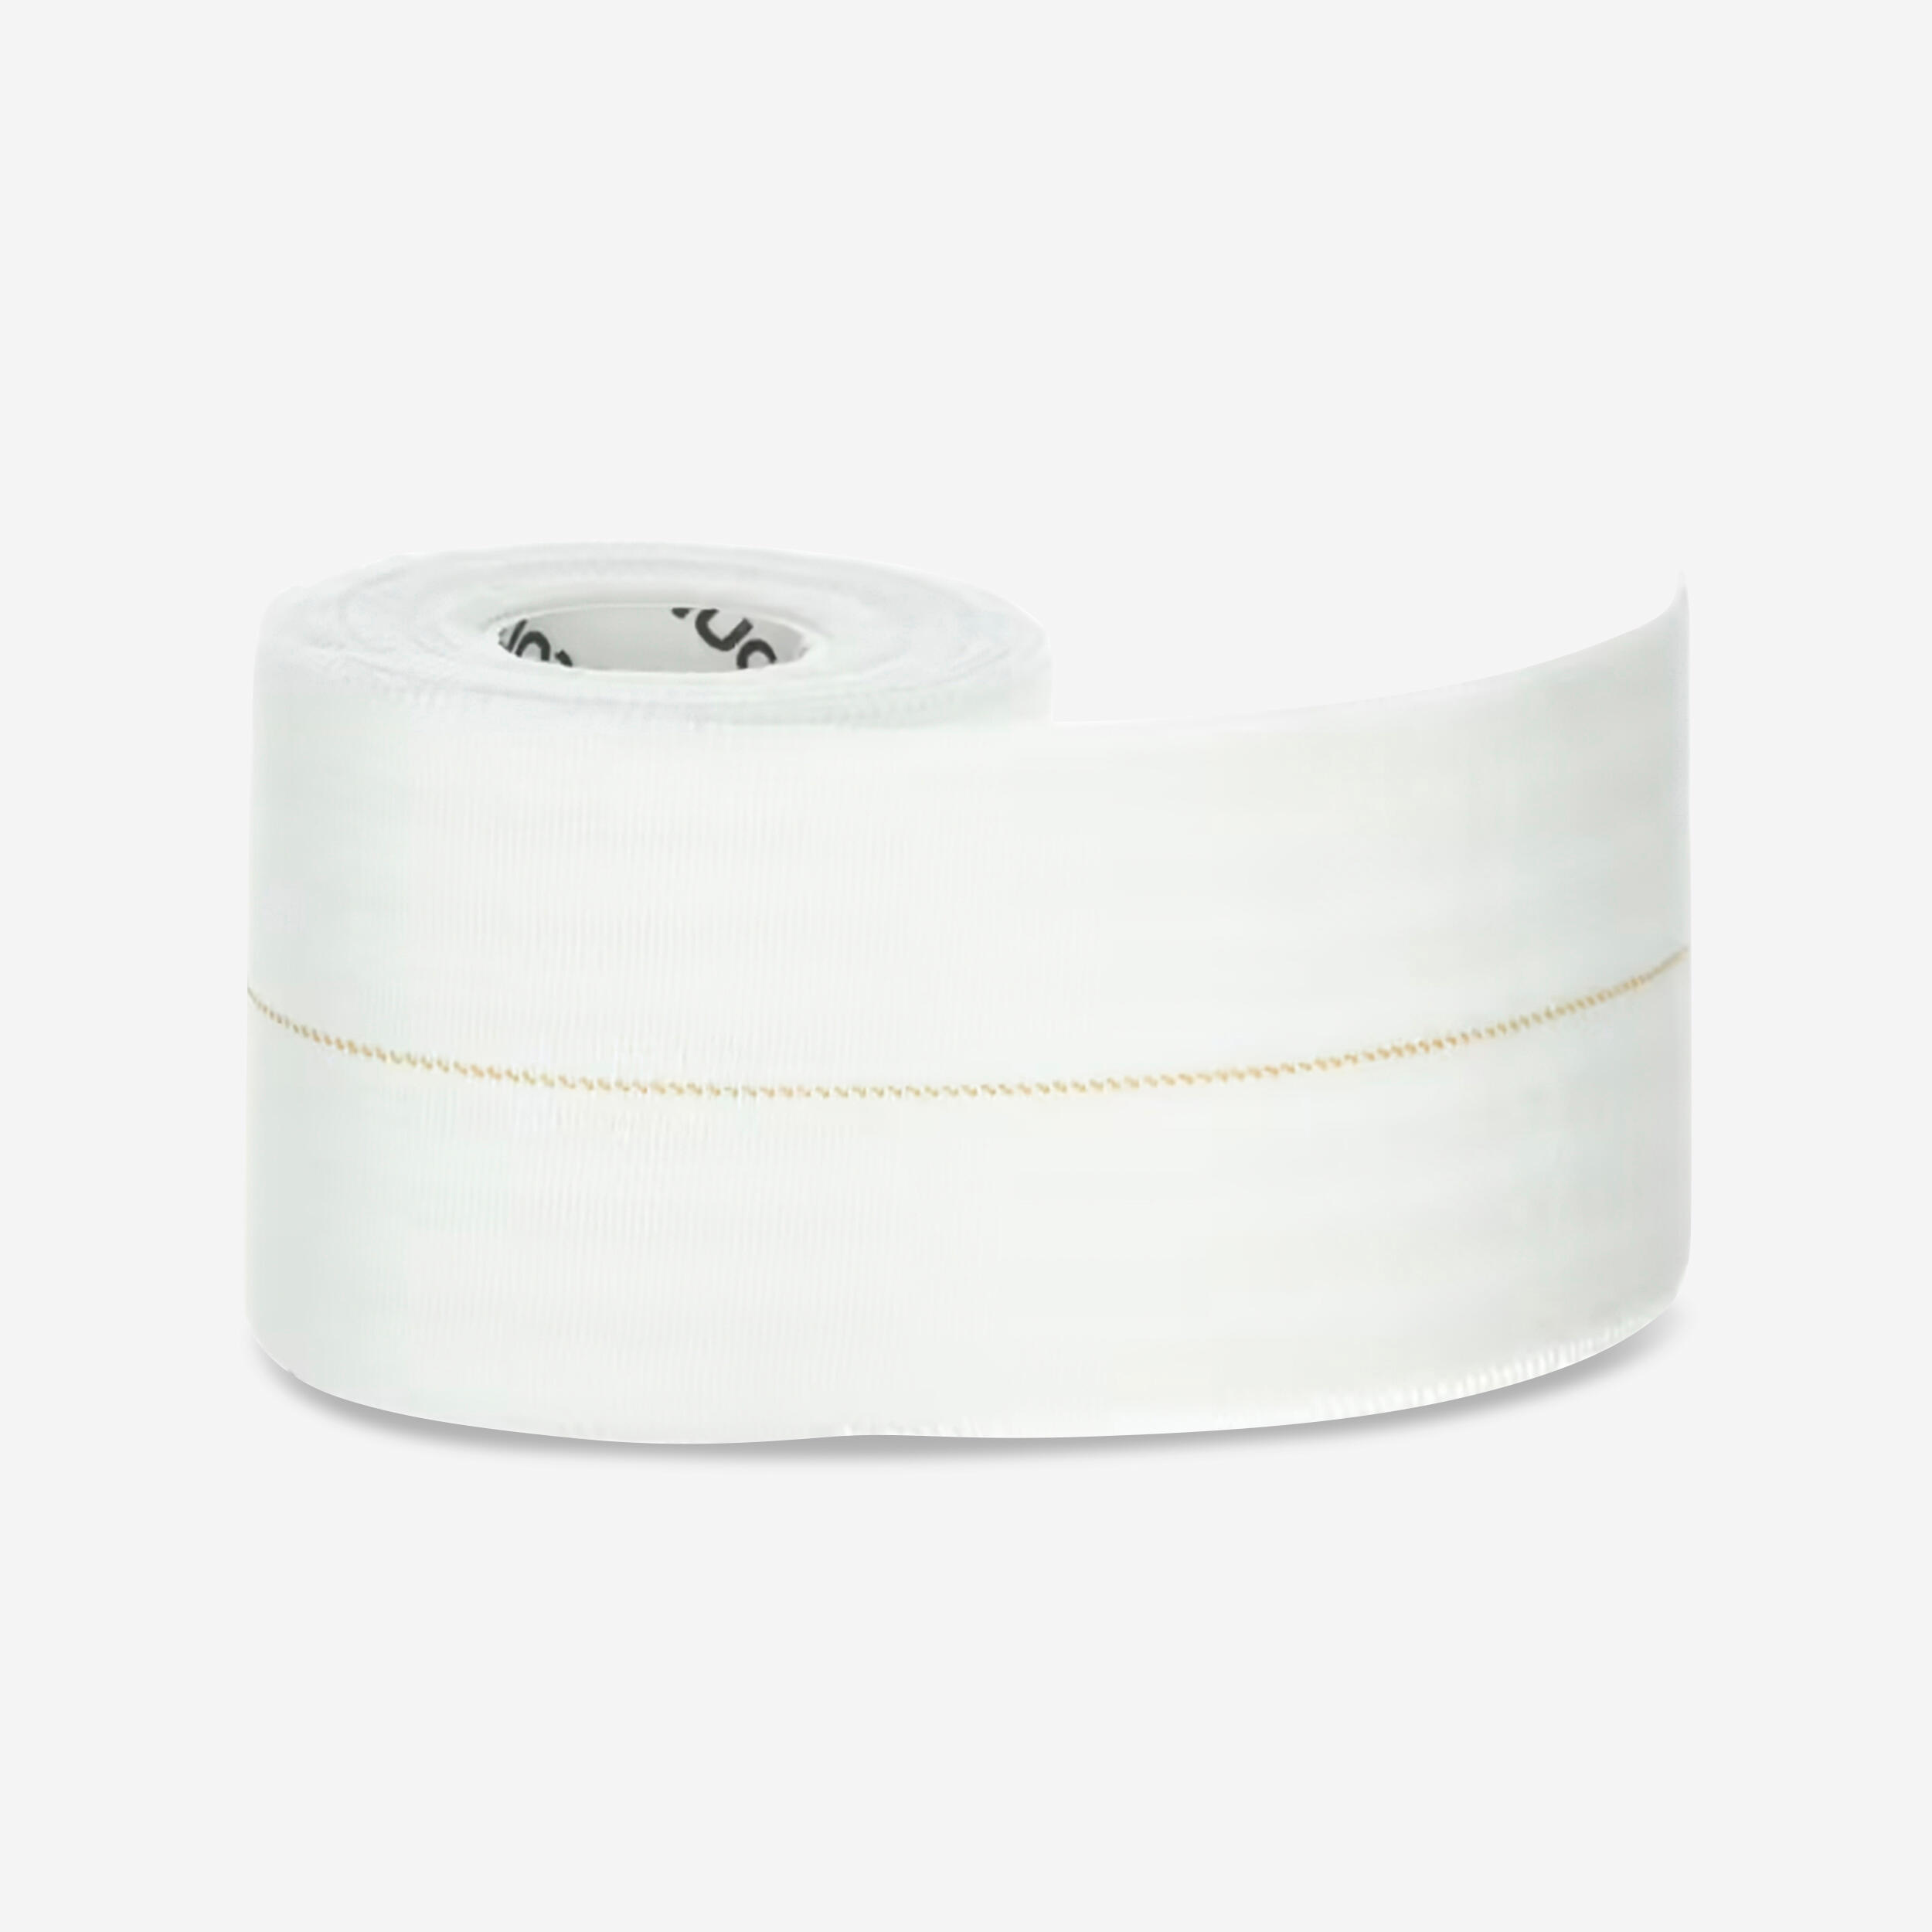 6 cm x 2.5 m Elastic Support Strap - White. 1/1